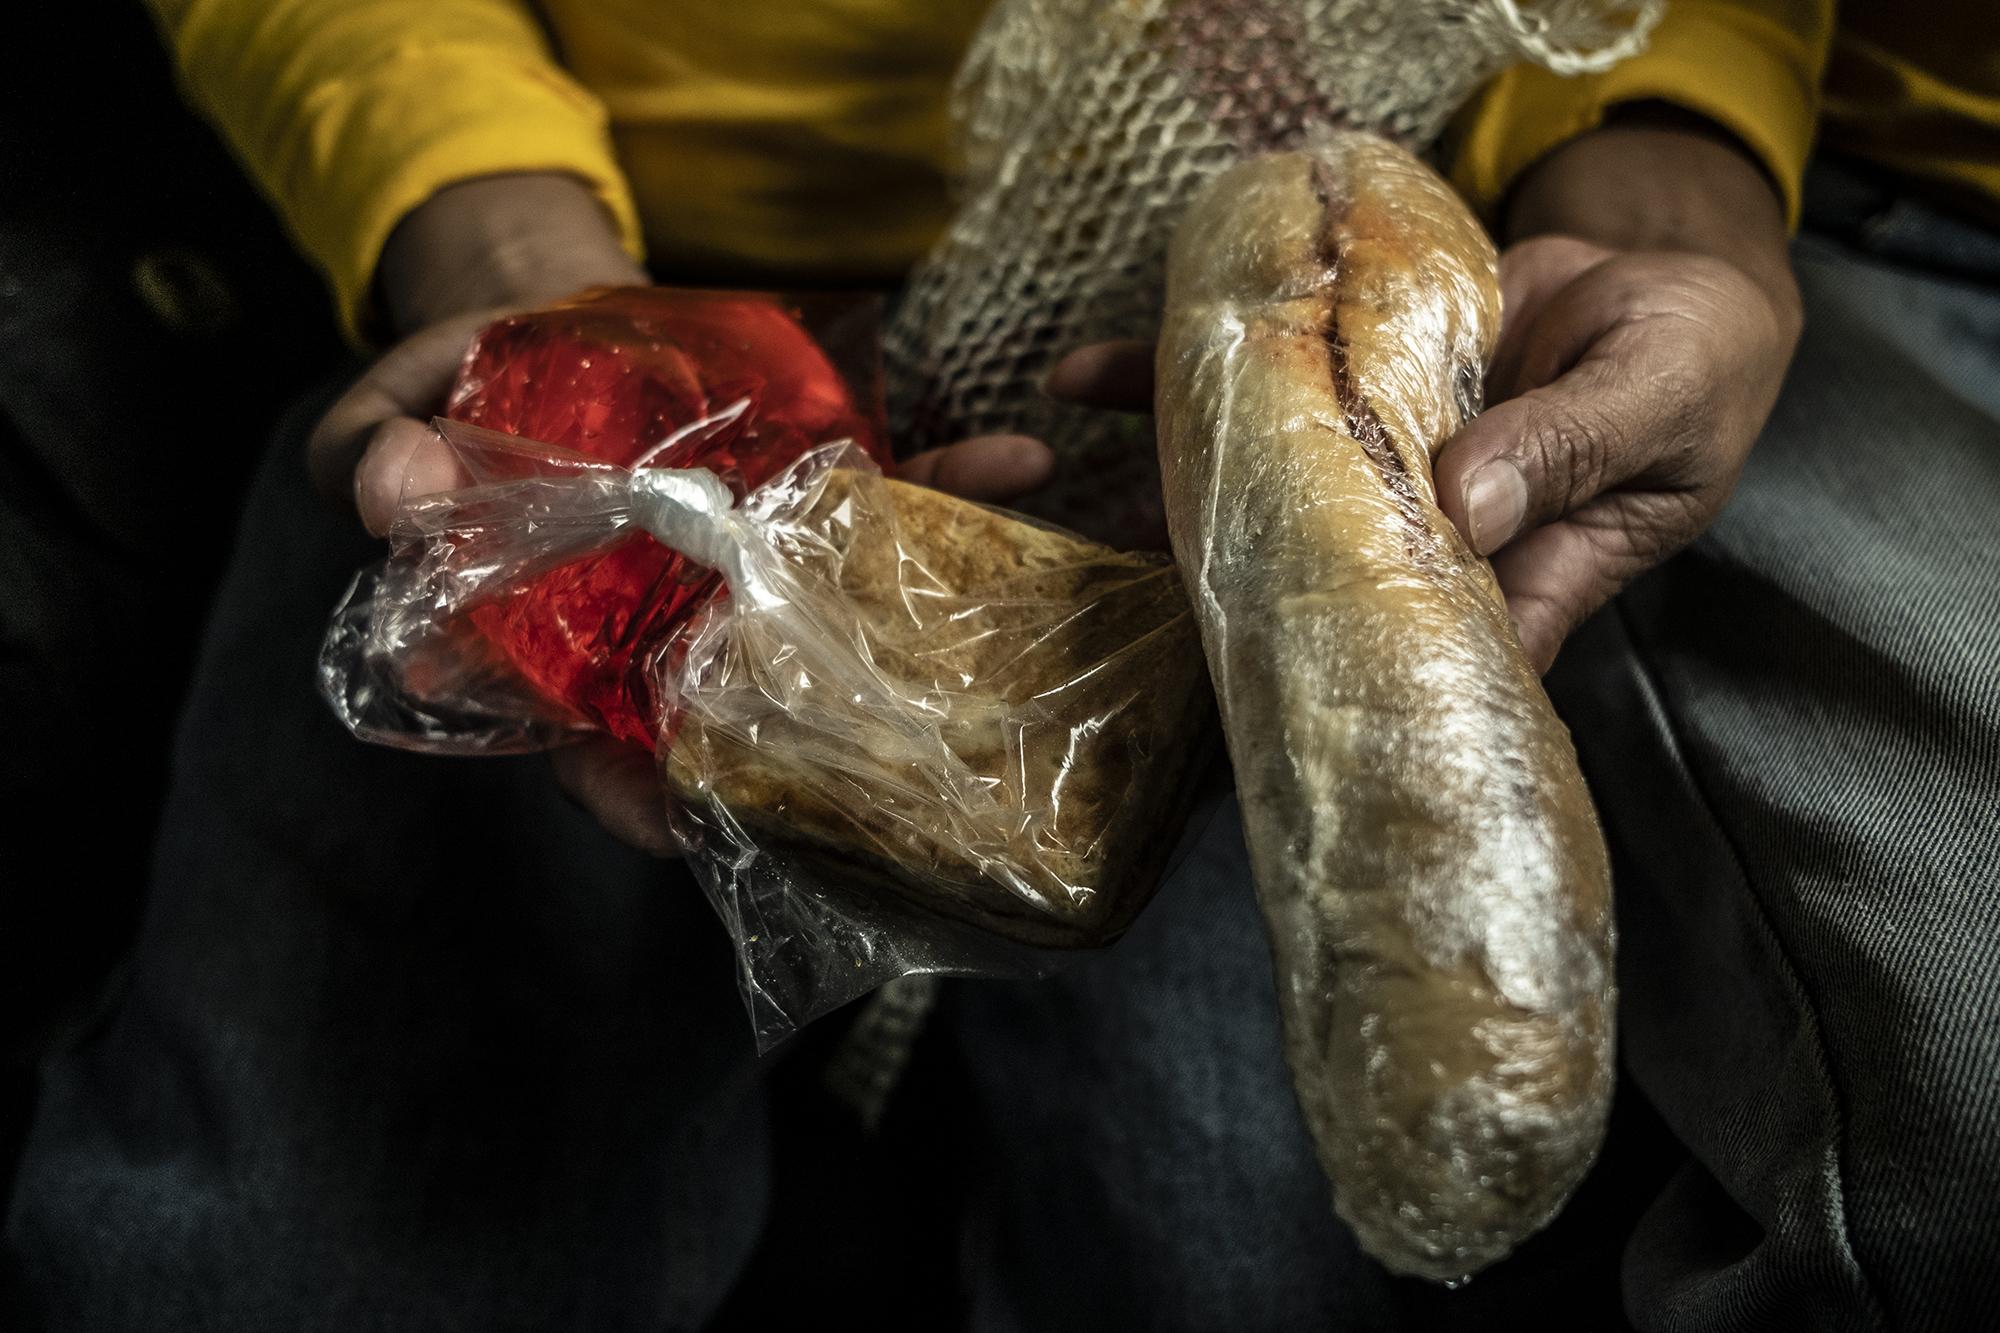 Un pan con mortadela, cemita y un refresco es la comida que lleva cada uno de los privados de libertad que salen a hacer trabajos comunitarios. Foto Carlos Barrera.